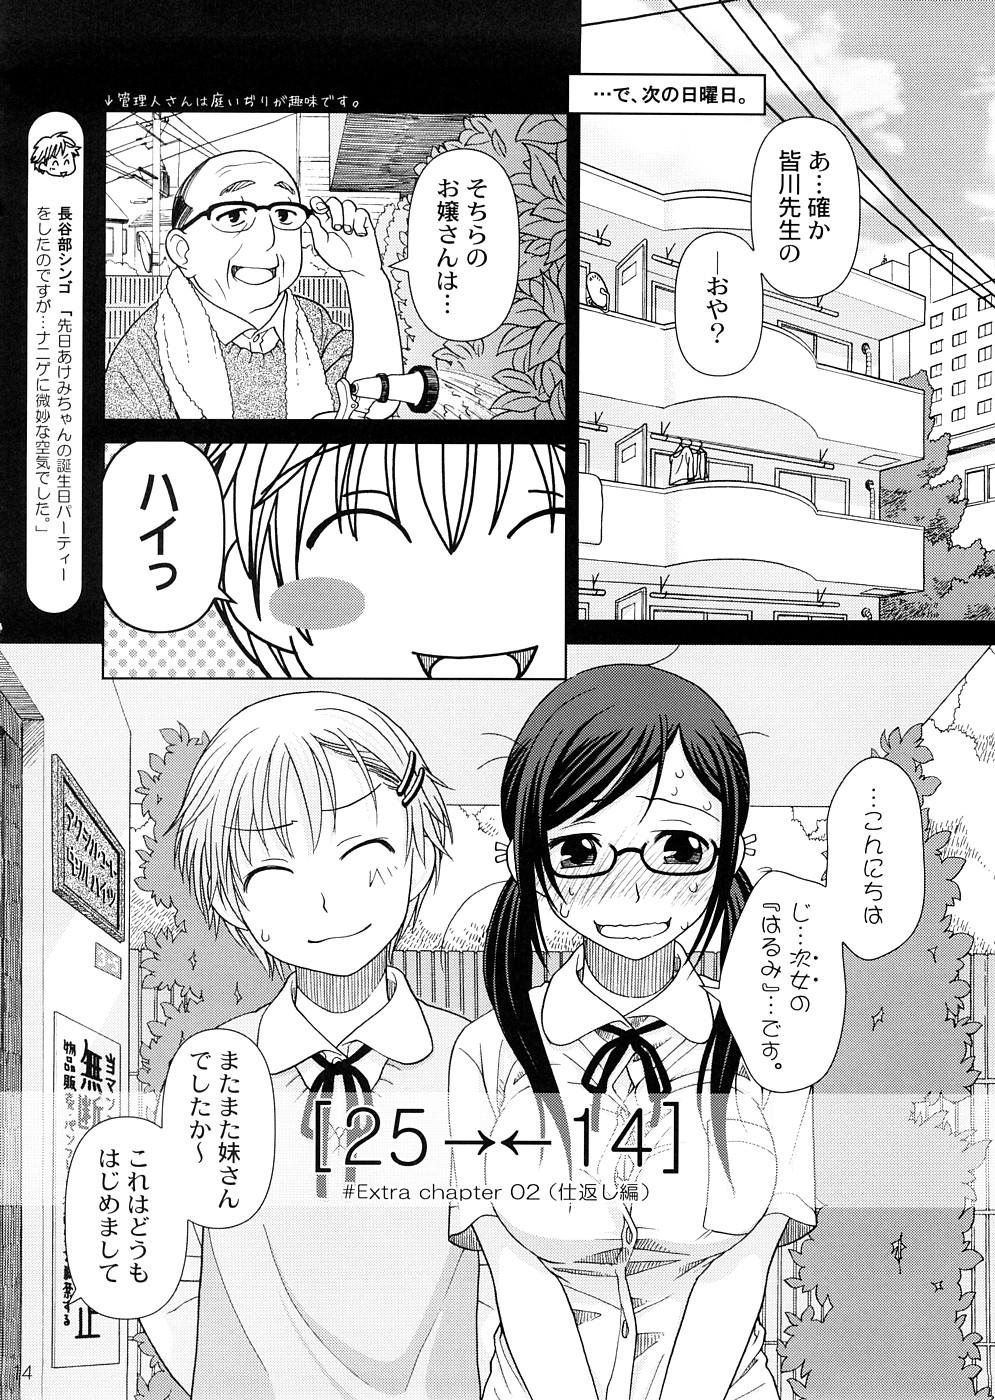 (COMIC1☆2) [Otaku Beam (Ootsuka Mahiro)] 2514 [24→←14] #Extra chapter 12